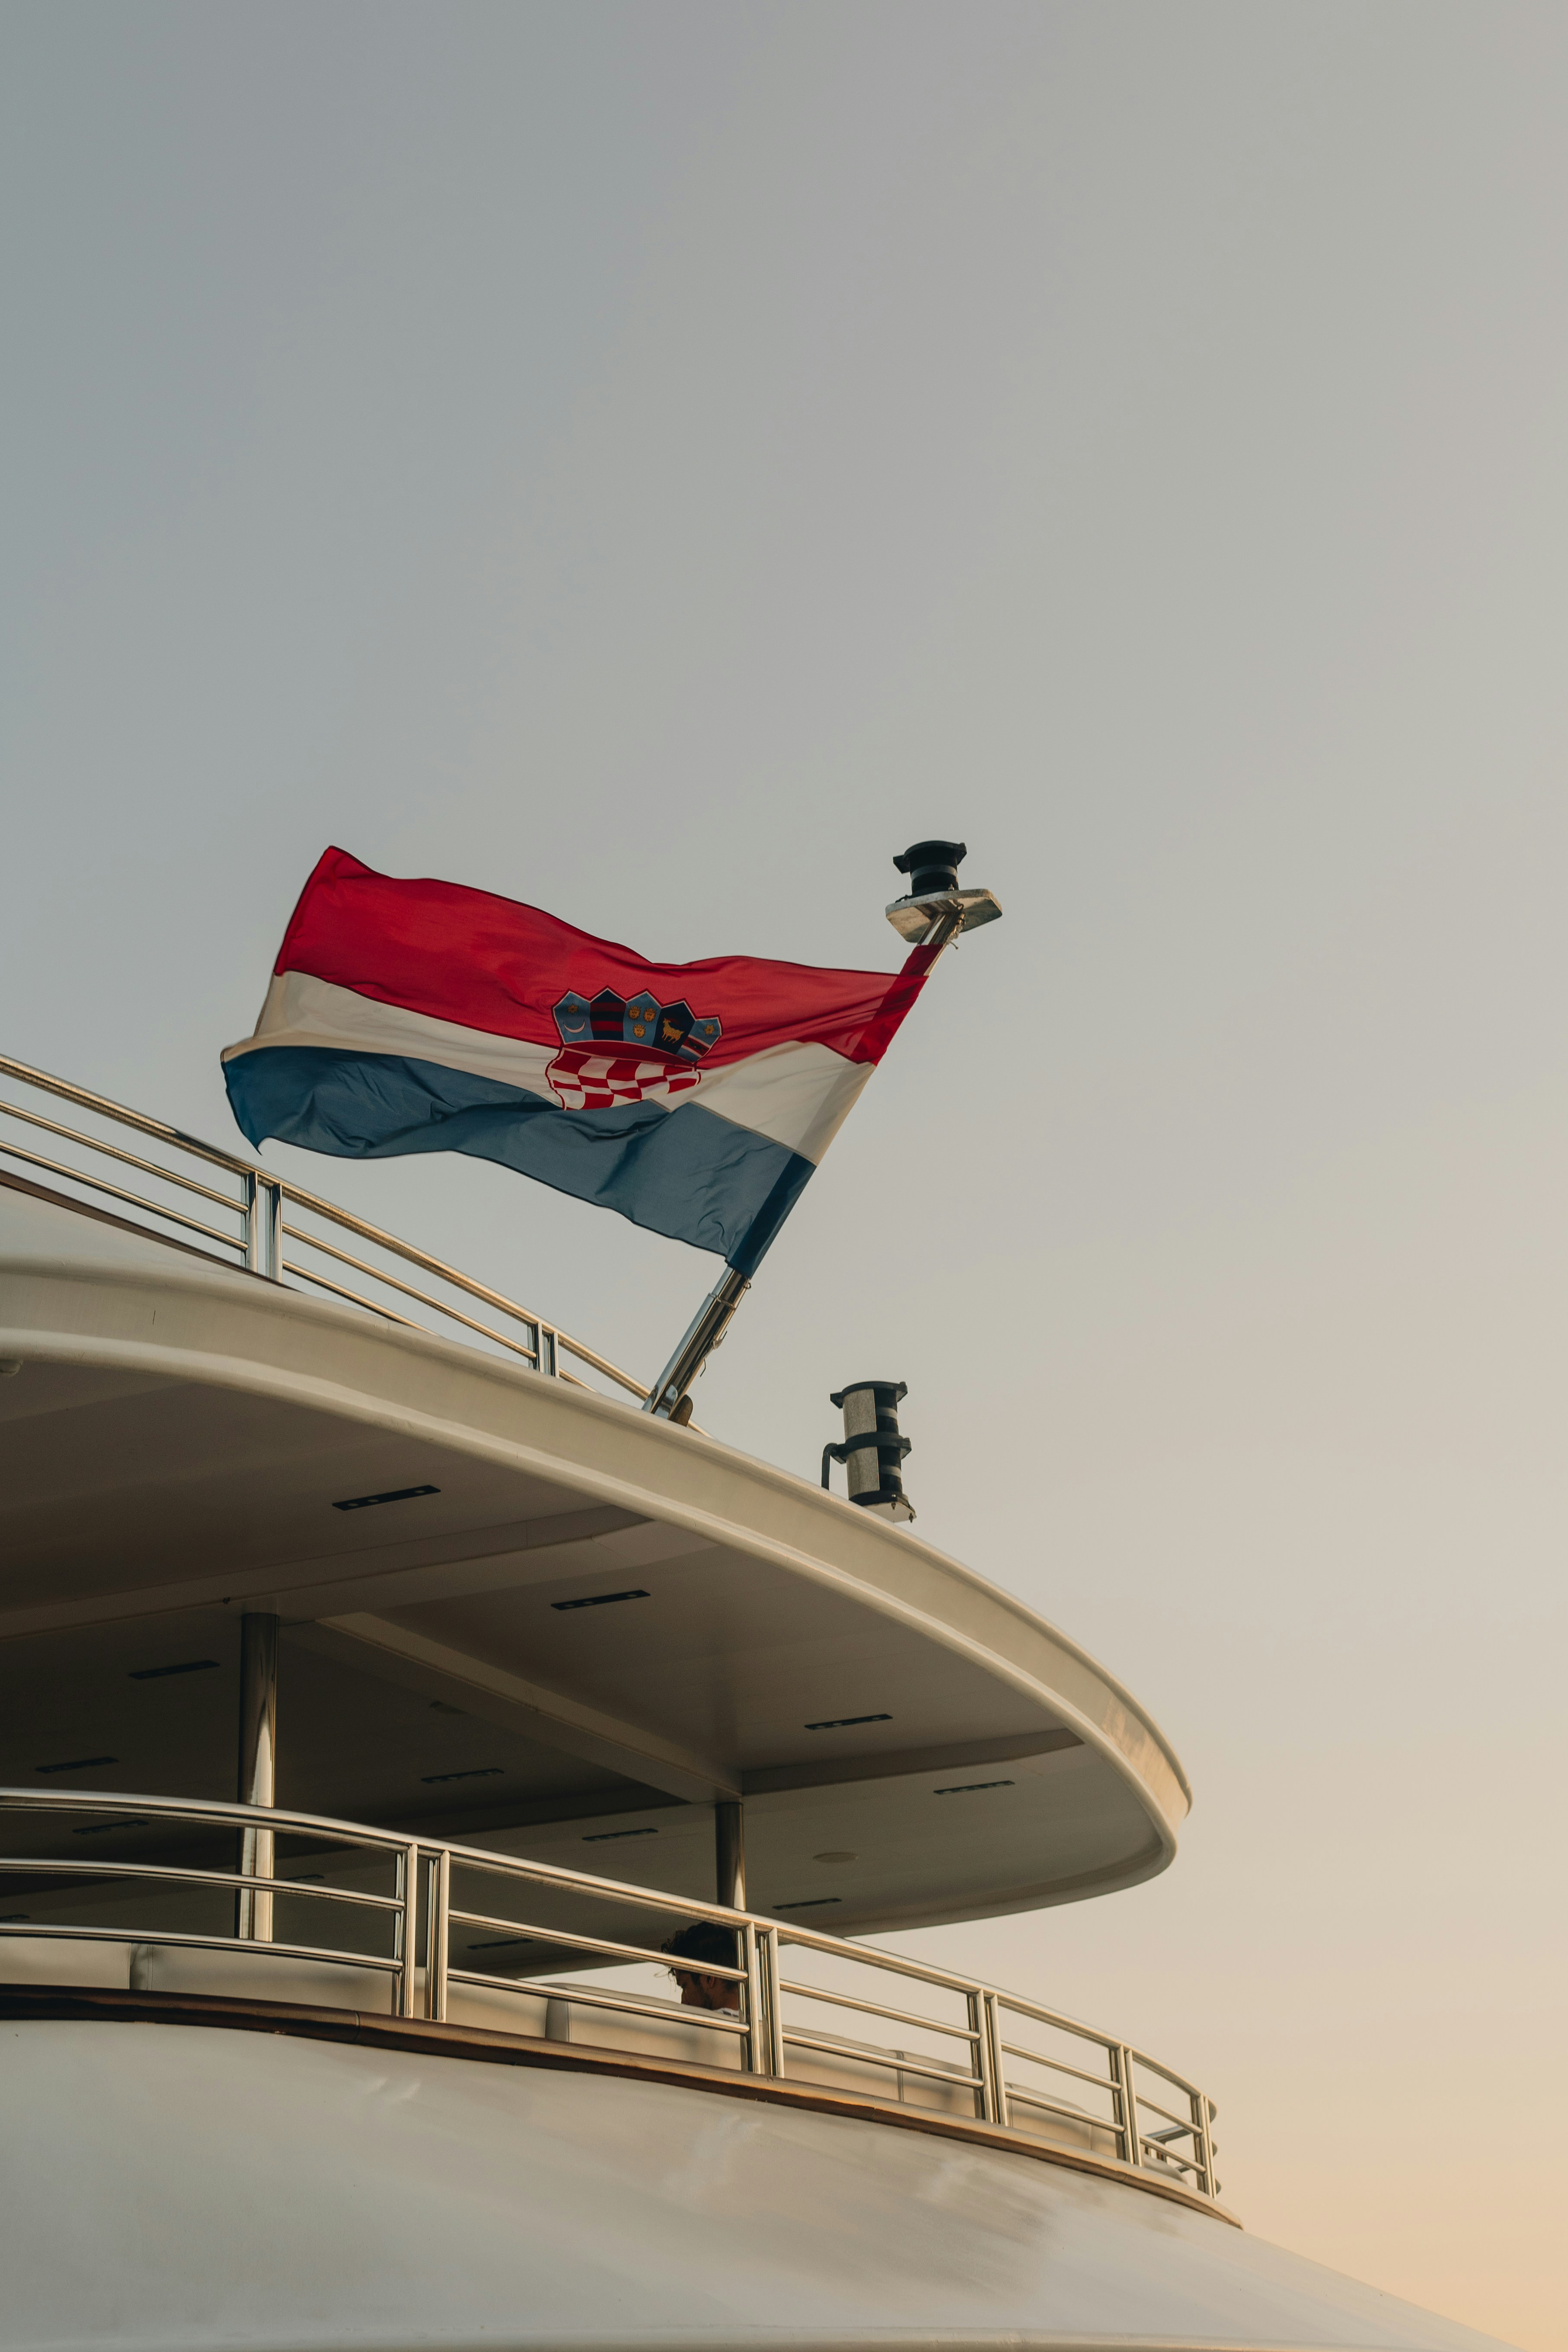 Croatian flag on a boat in Split Croatia